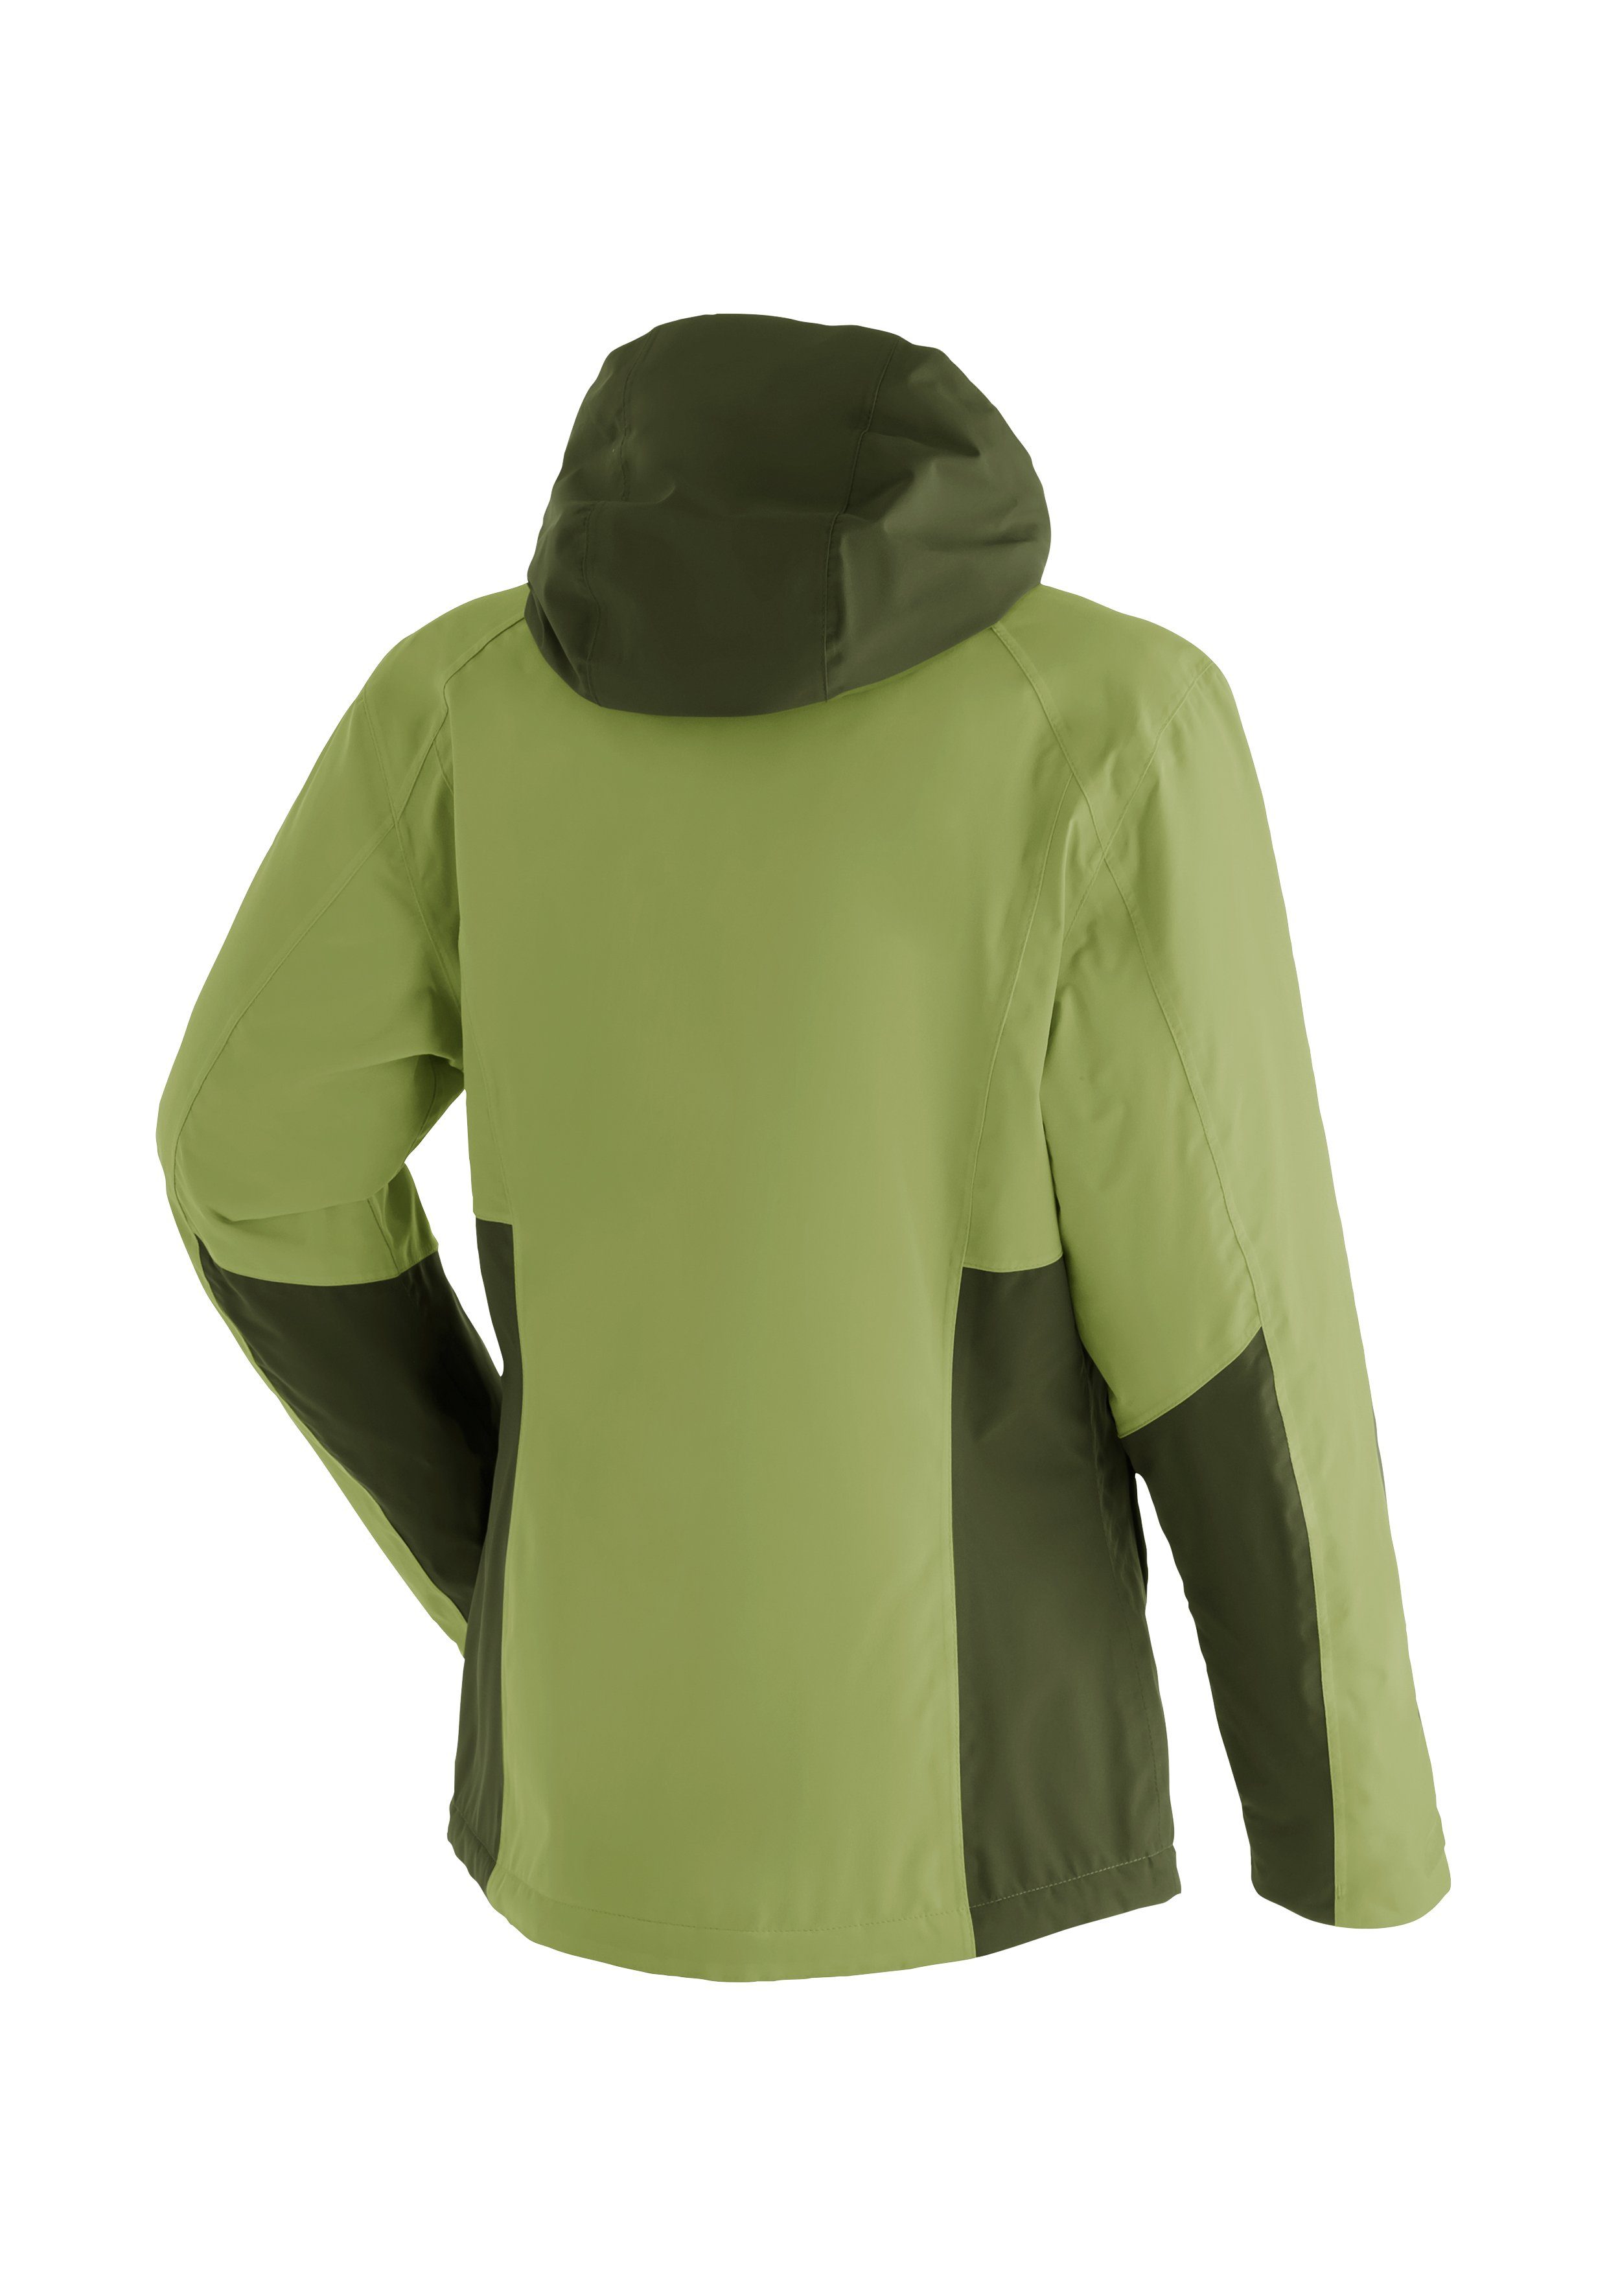 Maier Sports Outdoorjacke Jauk W wasserdicht atmungsaktiv maigrün und Winter-Jacke für Wanderjacke Damen